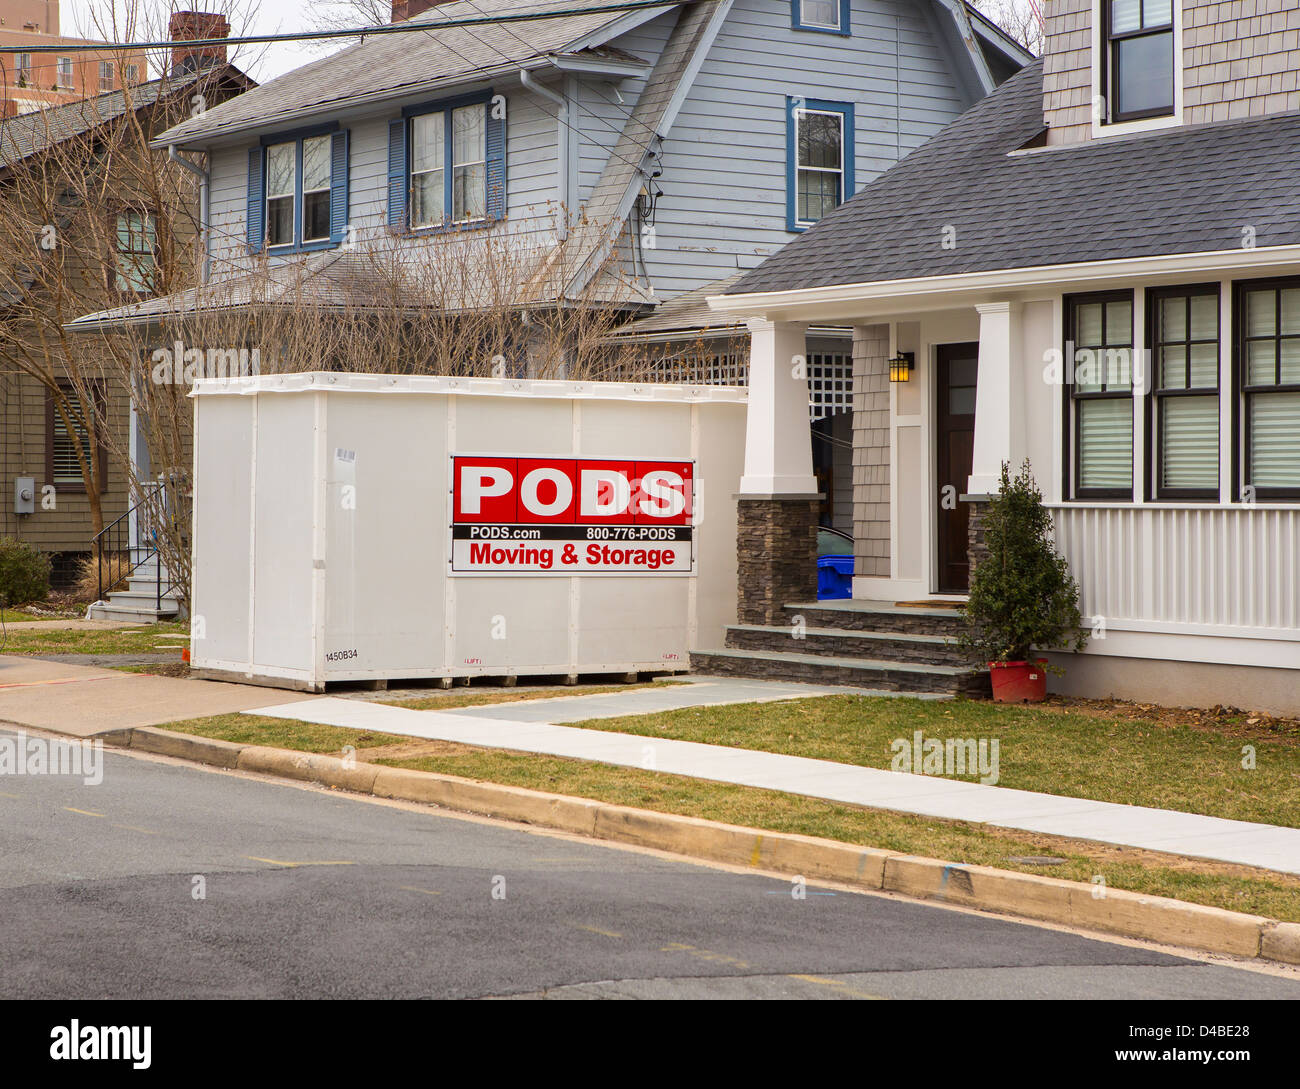 ARLINGTON, VIRGINIA, EE.UU. - vainas recipiente de almacenamiento en el frente de las casas. Foto de stock